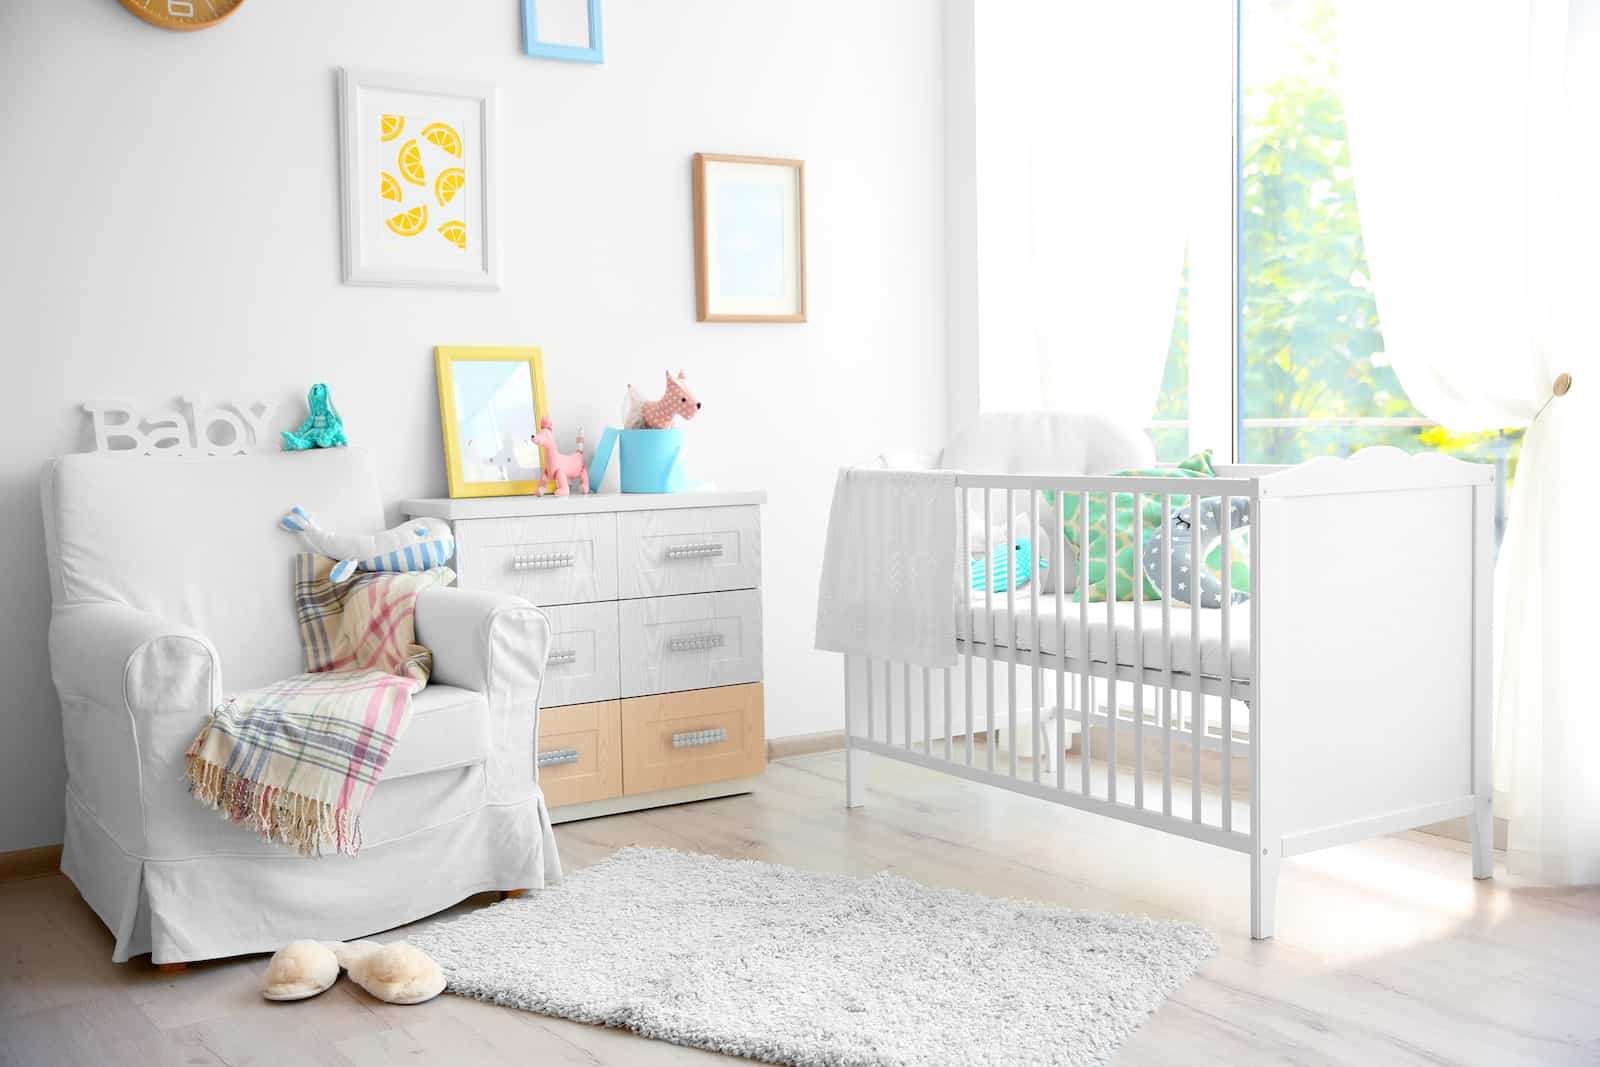 Fácil de comprender administración Quagga 17 Ideas Para Decorar la Habitación del Bebé